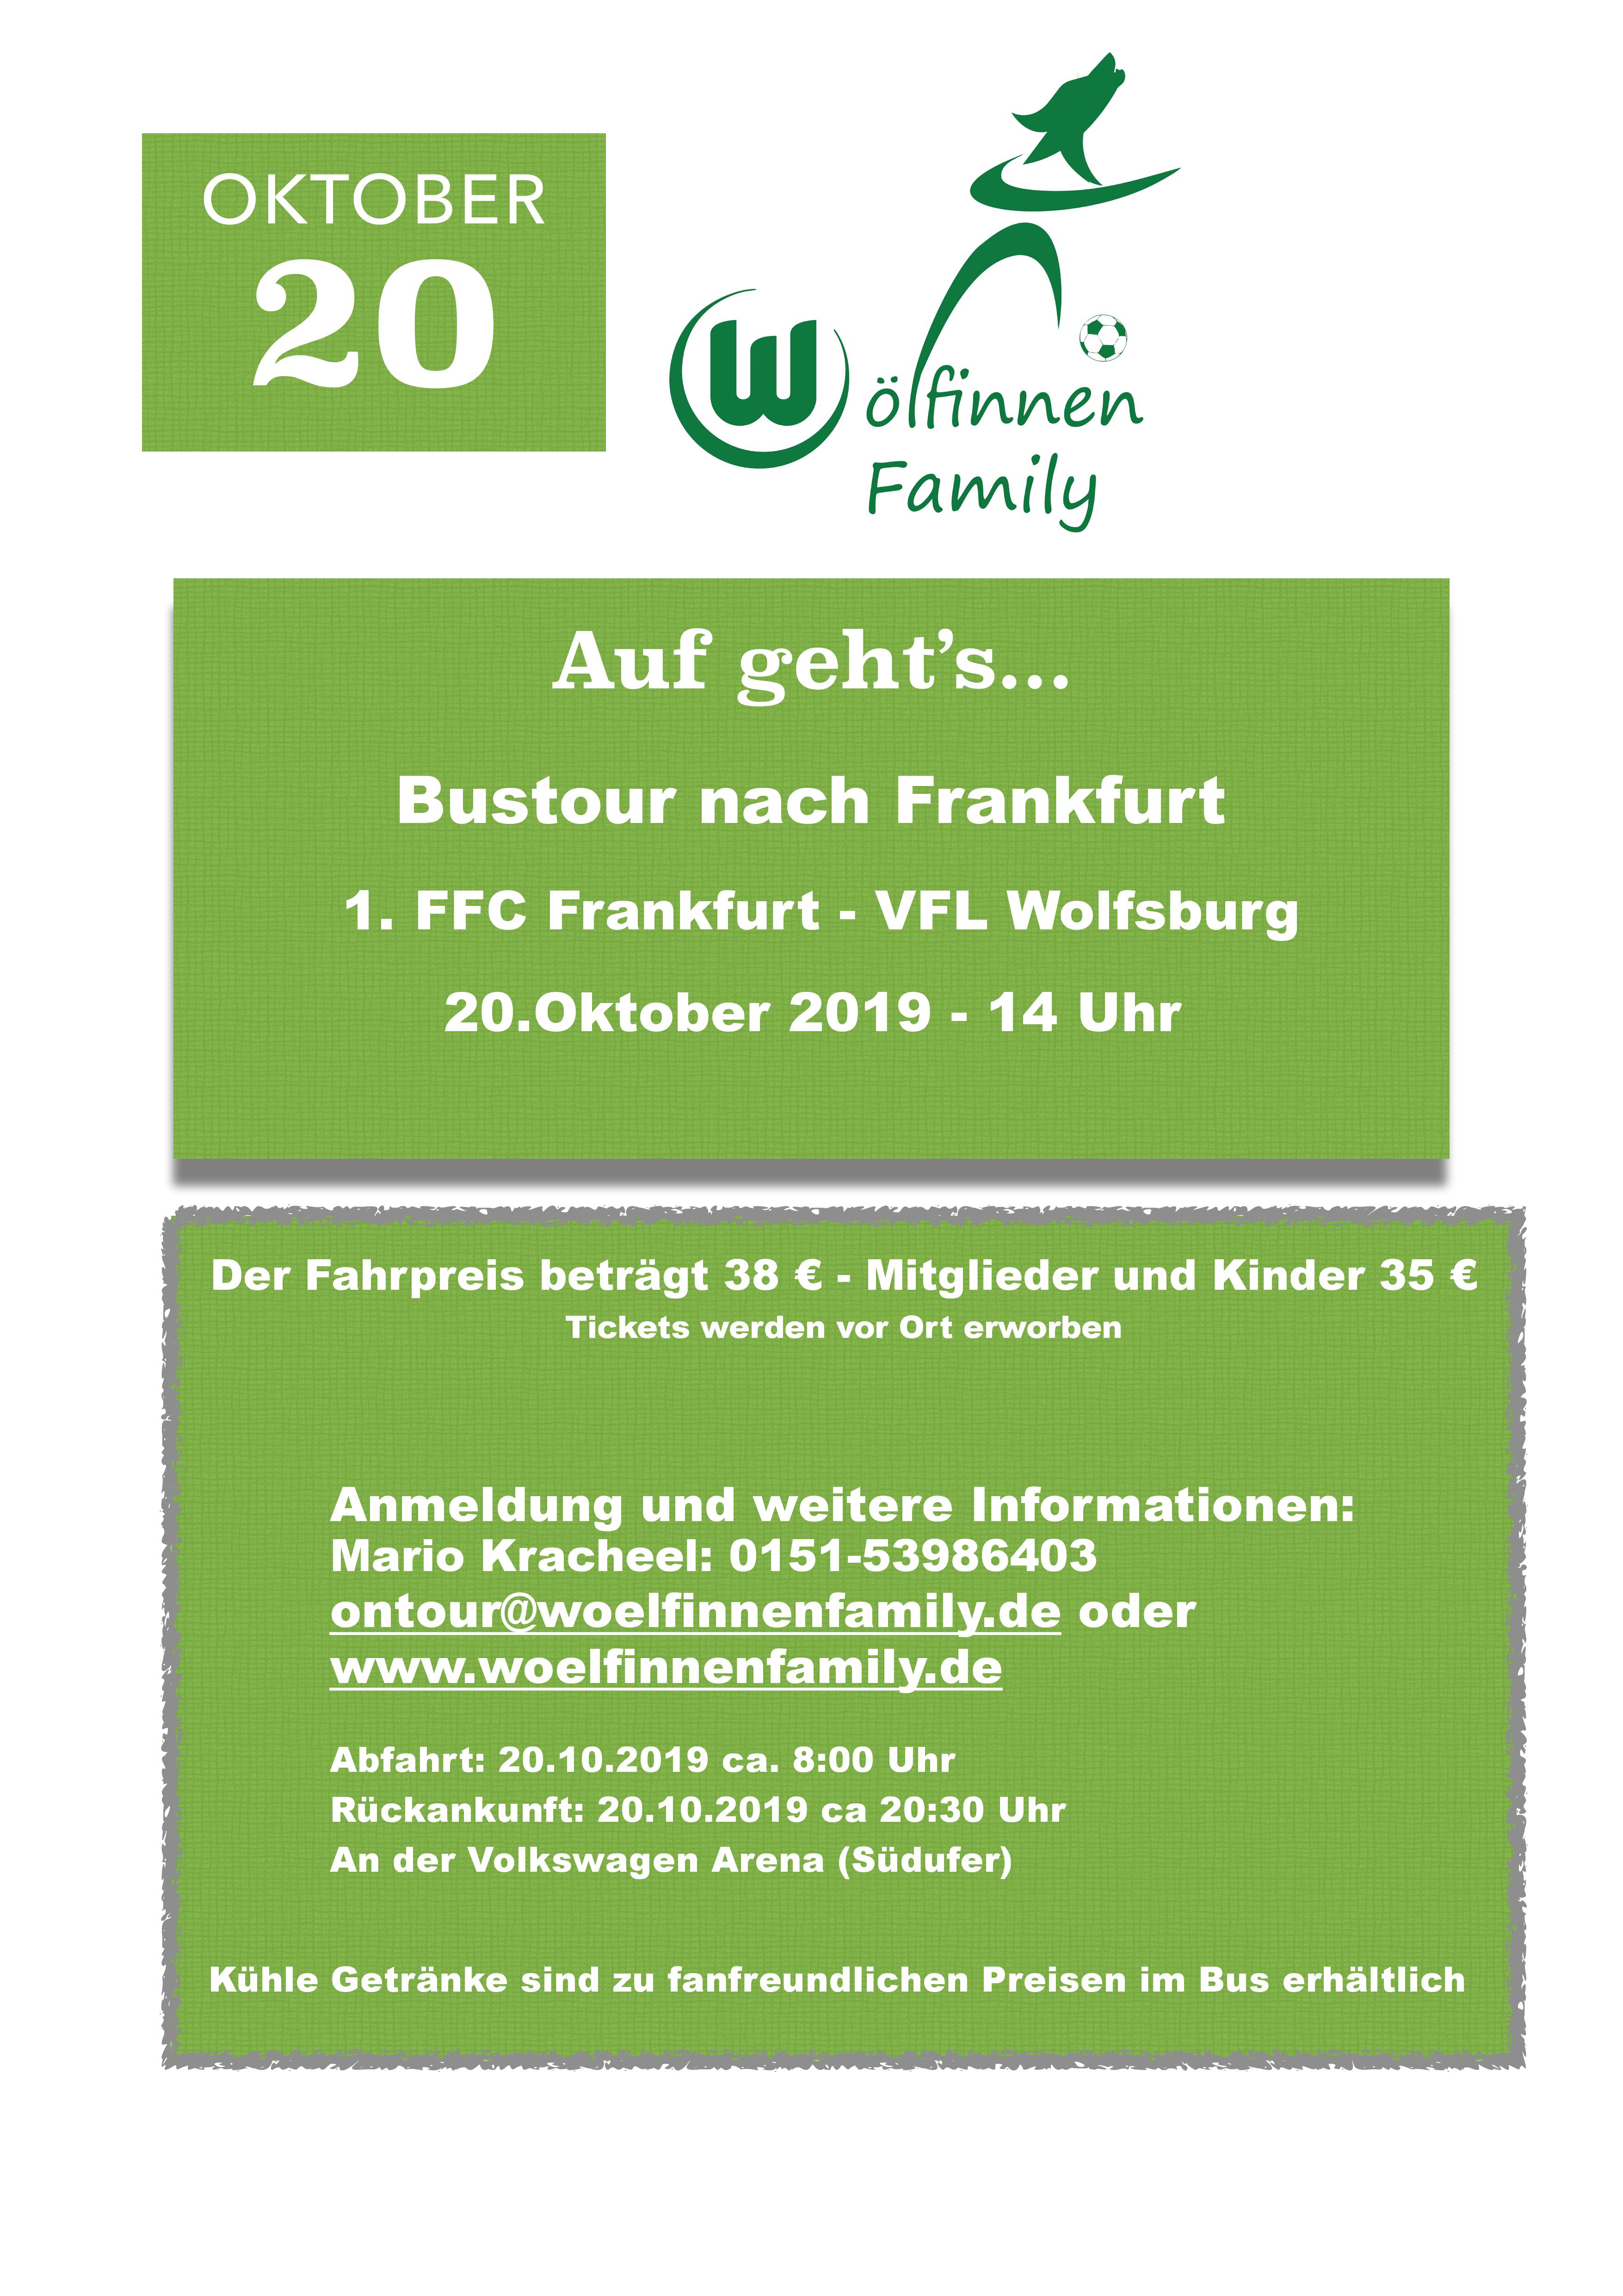 Auf geht’s … Bustour nach Frankfurt               1.FFC Frankfurt – VfL Wolfsburg 20.10.2019